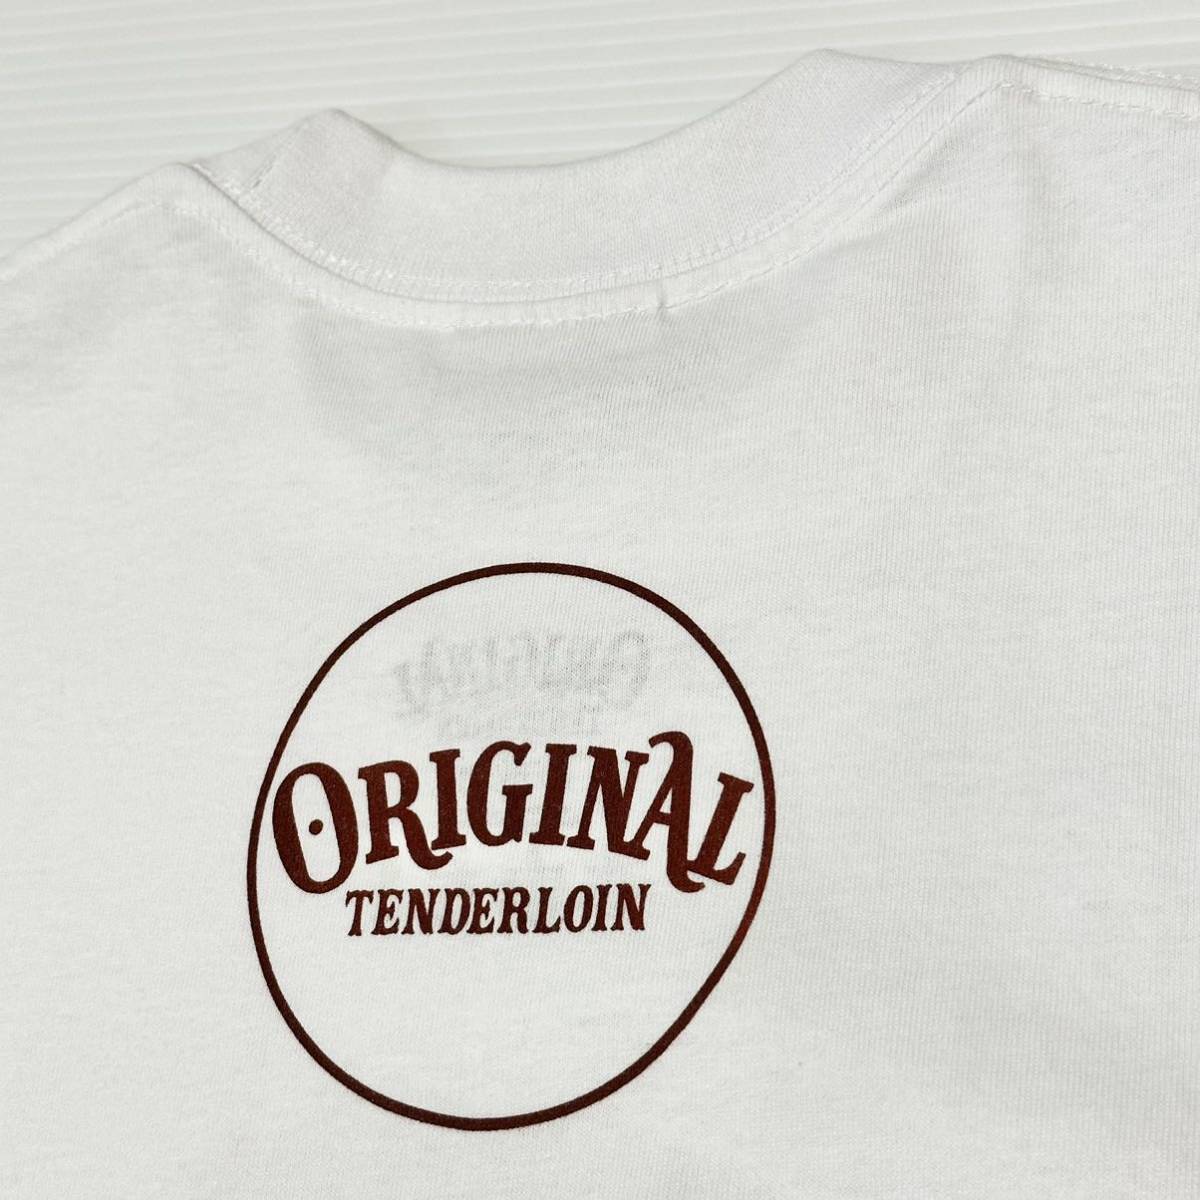 1円出品 TENDERLOIN tenderloin テンダーロイン 半袖 Tシャツ TEE JC ジェシー イエス キリスト キリシタン ホワイト  白 M 本店 限定